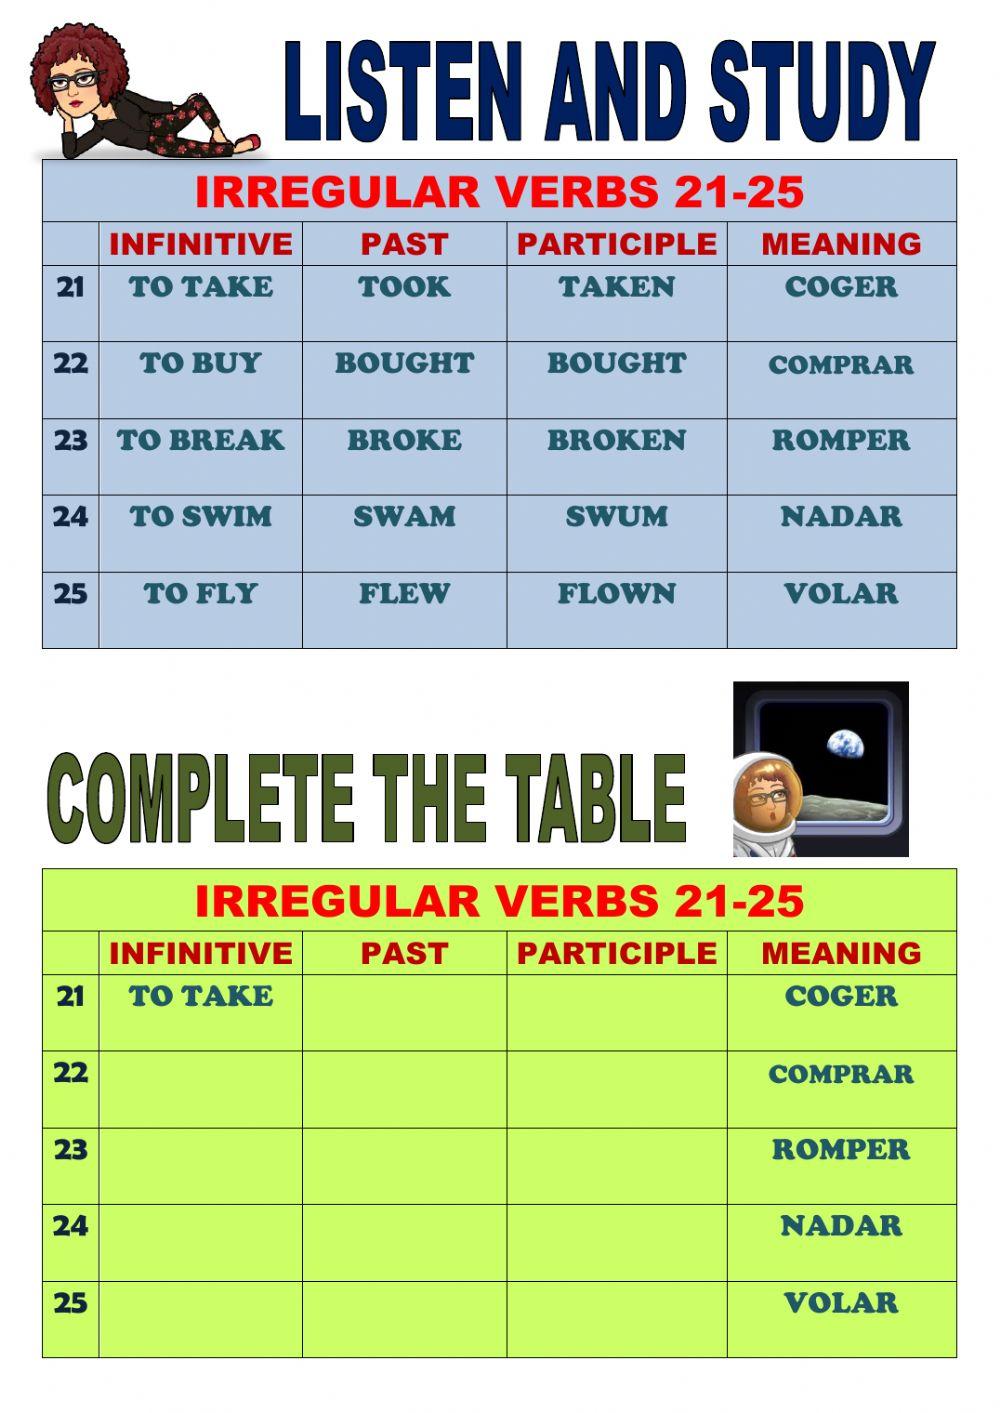 Irregular verbs 21 to 25